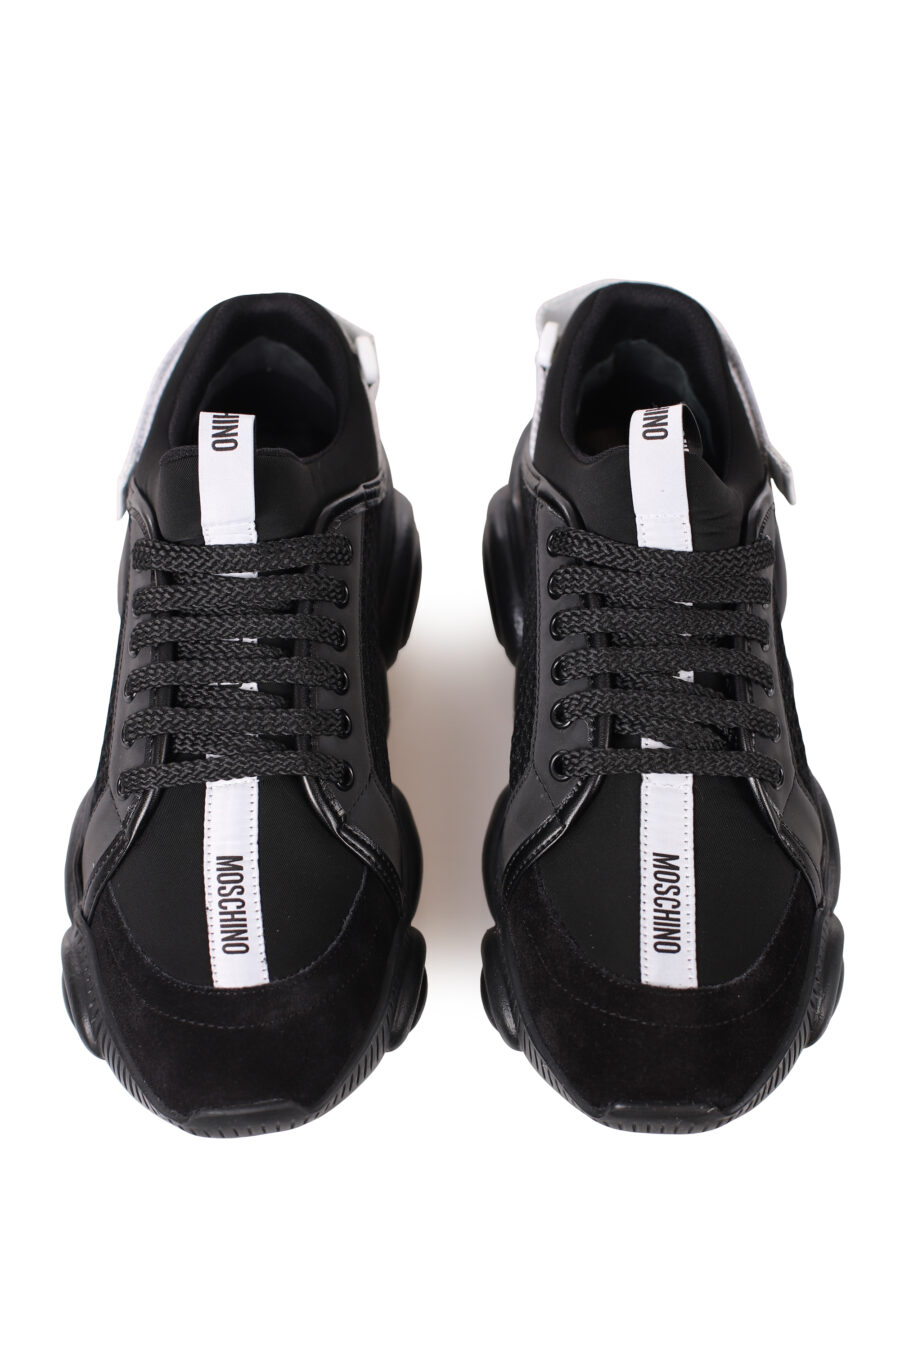 Zapatillas negras "Orso35" - IMG 0326